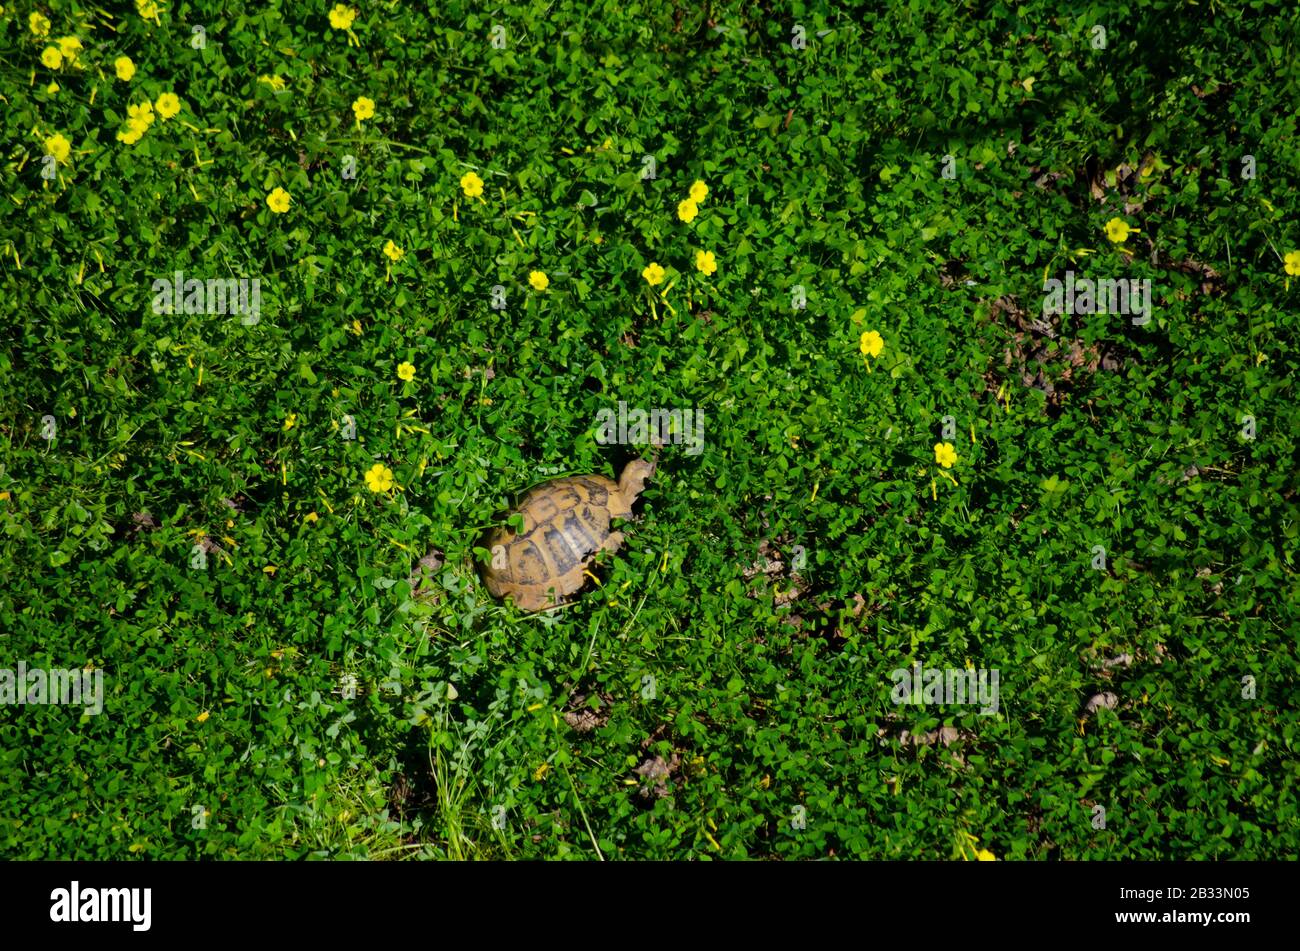 Luftbild einer griechischen Schildkröte ( Testudo graeca auch als Stirnschildkröte bezeichnet) kriecht in Frühlingspflanzen in einem Garten in Athen Griechenland Stockfoto